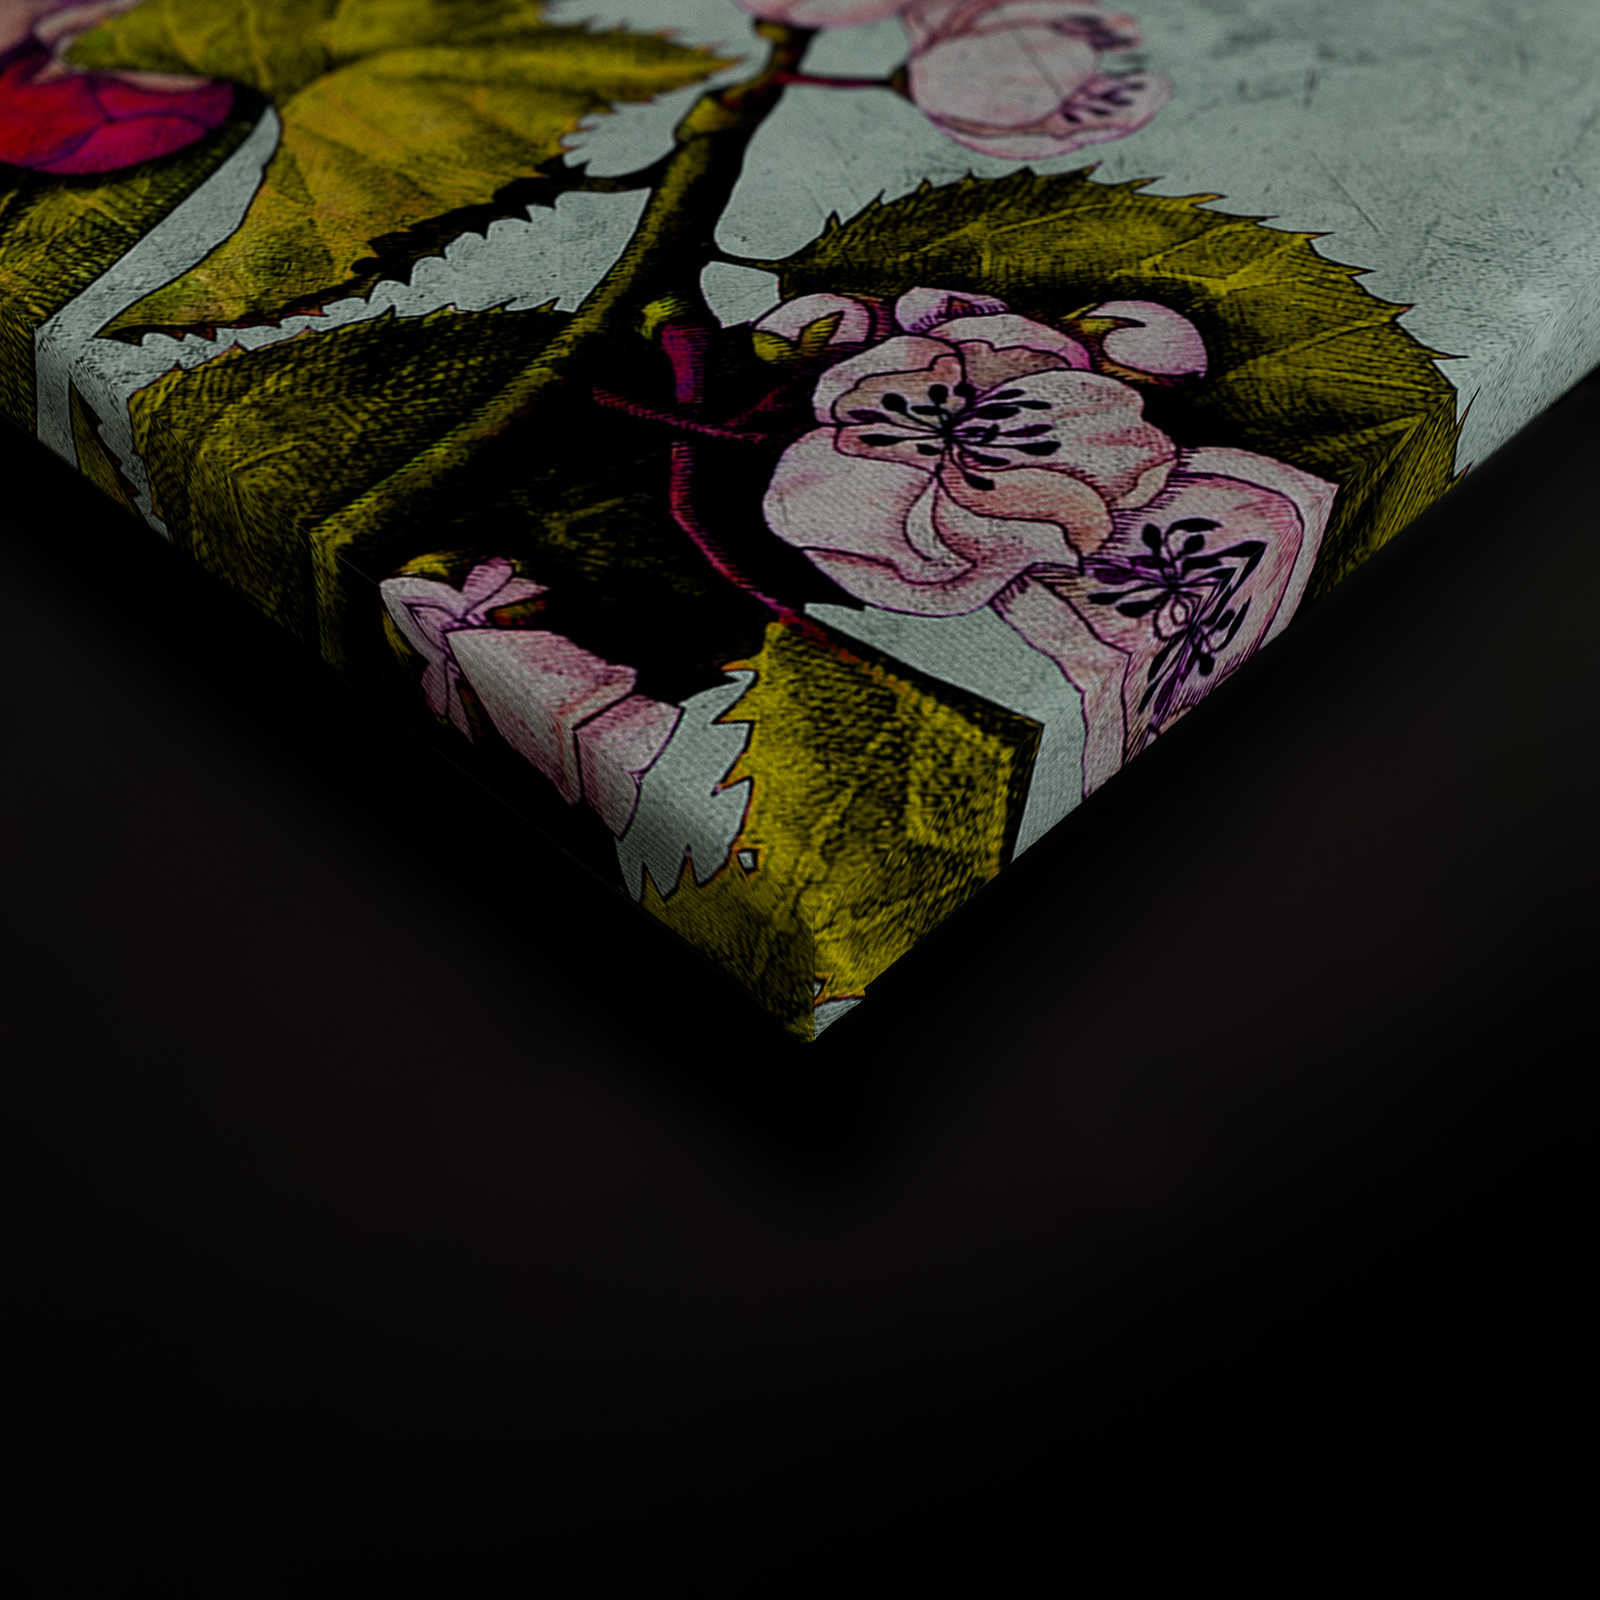             Tropical Passion 2 - Quadro su tela con fiori e boccioli - 0,90 m x 0,60 m
        